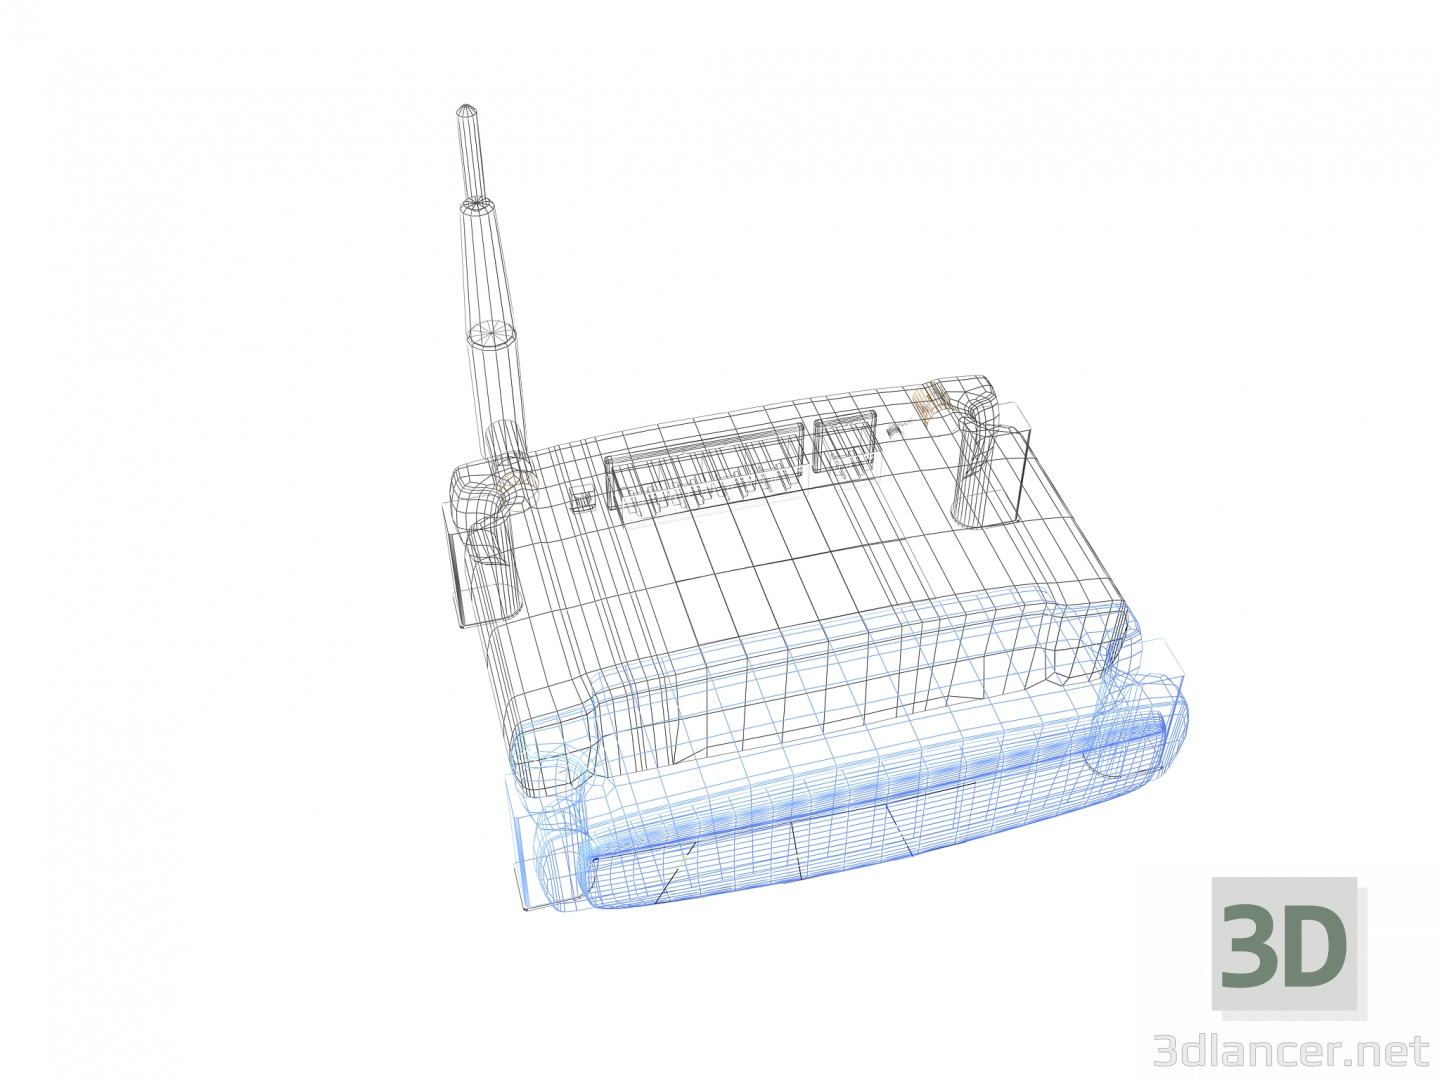 3D Linksys kablosuz yönlendirici modeli satın - render